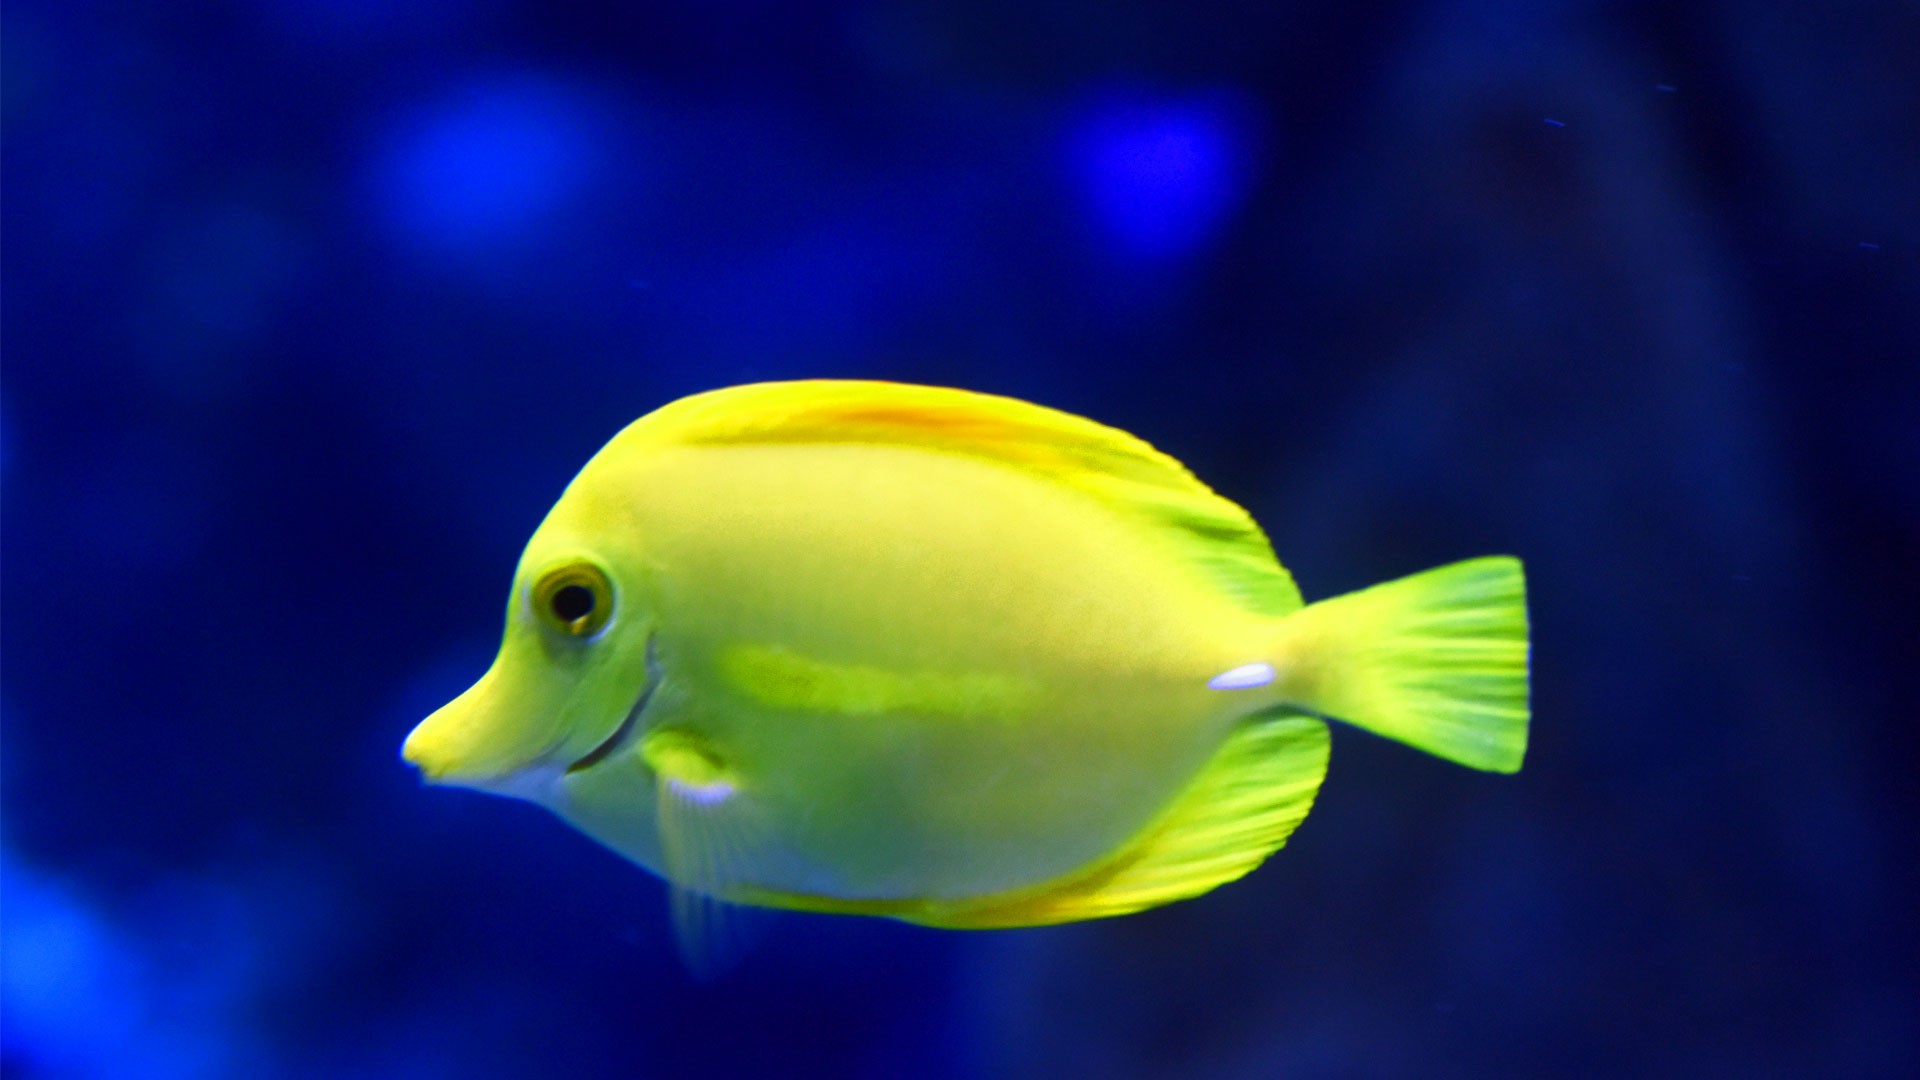 Yellow Surgeonfish